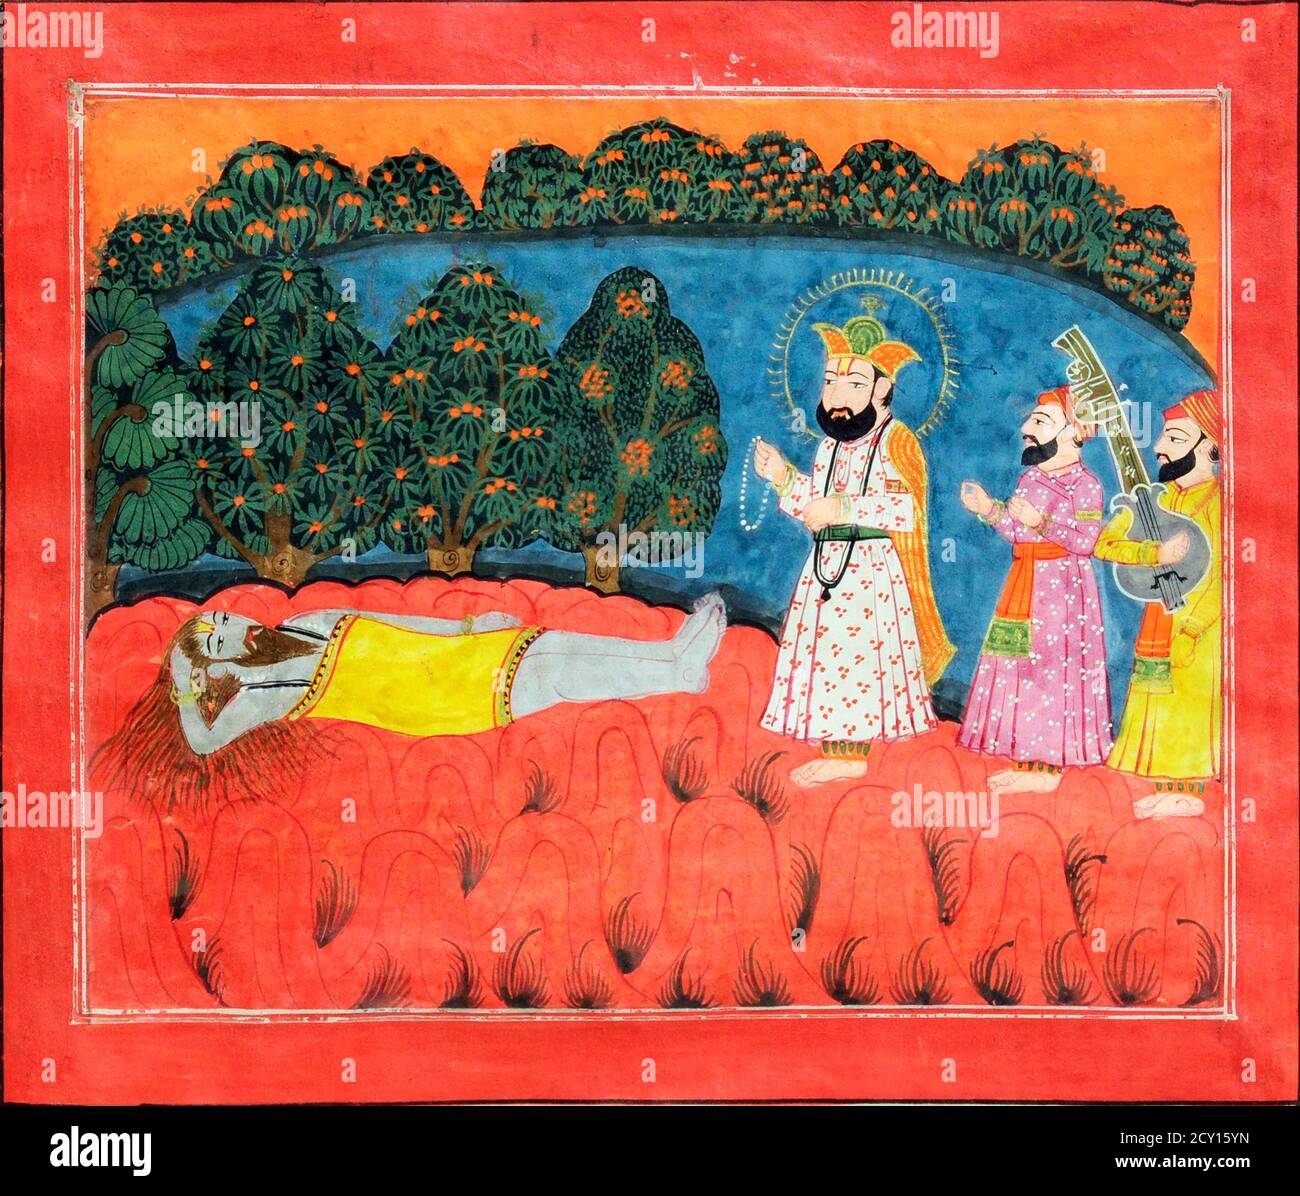 Il guru Nanak viene sulla Sanyasi Dattetreya, pittura, pigmenti naturali su carta, c.1775-1800, scuola di Kashmiri. Il guru Nanak fu il primo Guru di Sikh e il fondatore del Sikhismo. Foto Stock